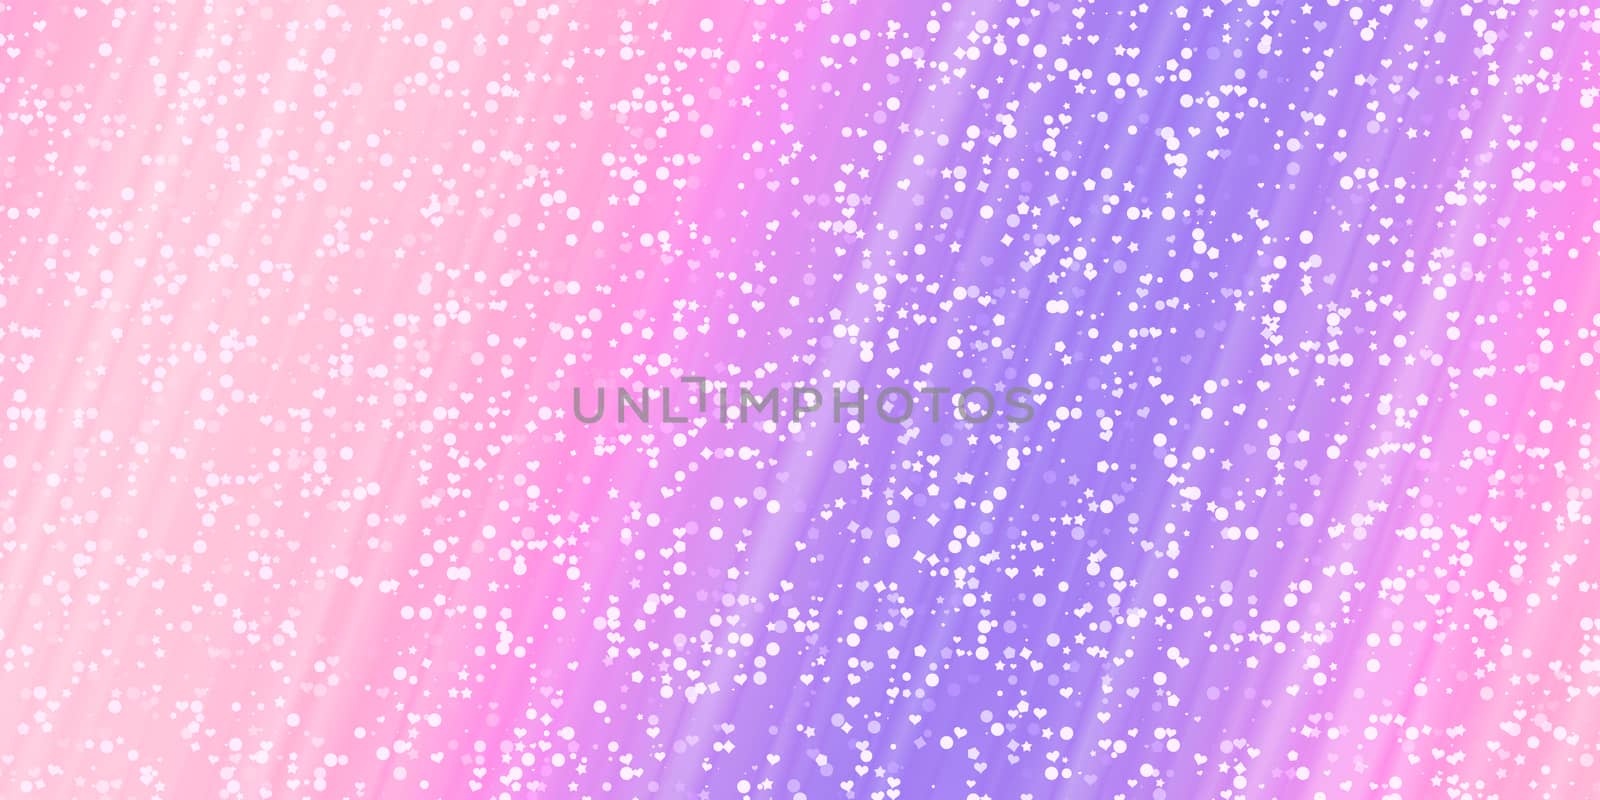 Confetti glitter background. Brilliance glitter shapes backdrop.